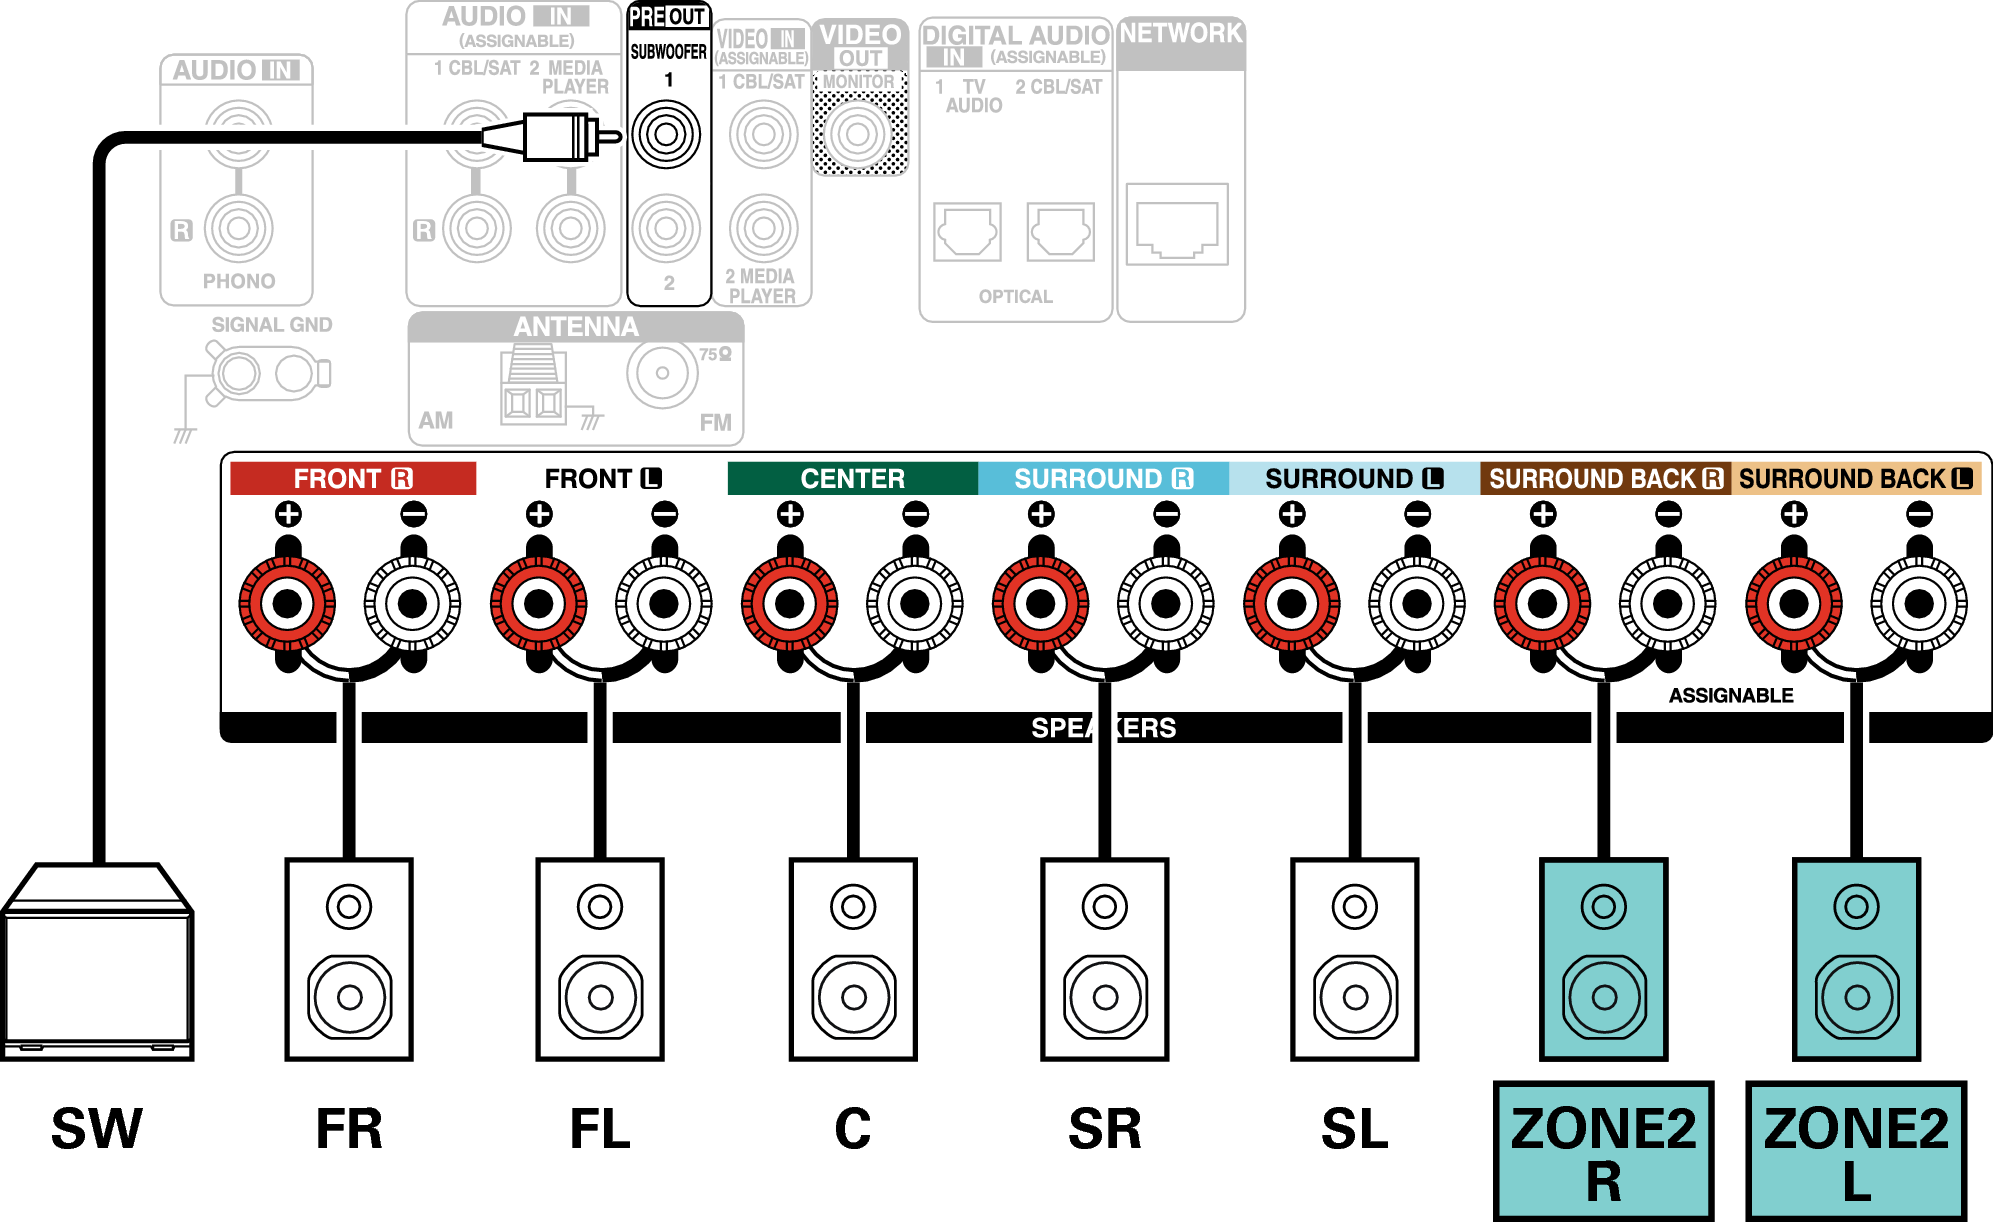 Conne SP 5.1 ZONE2 X17E2